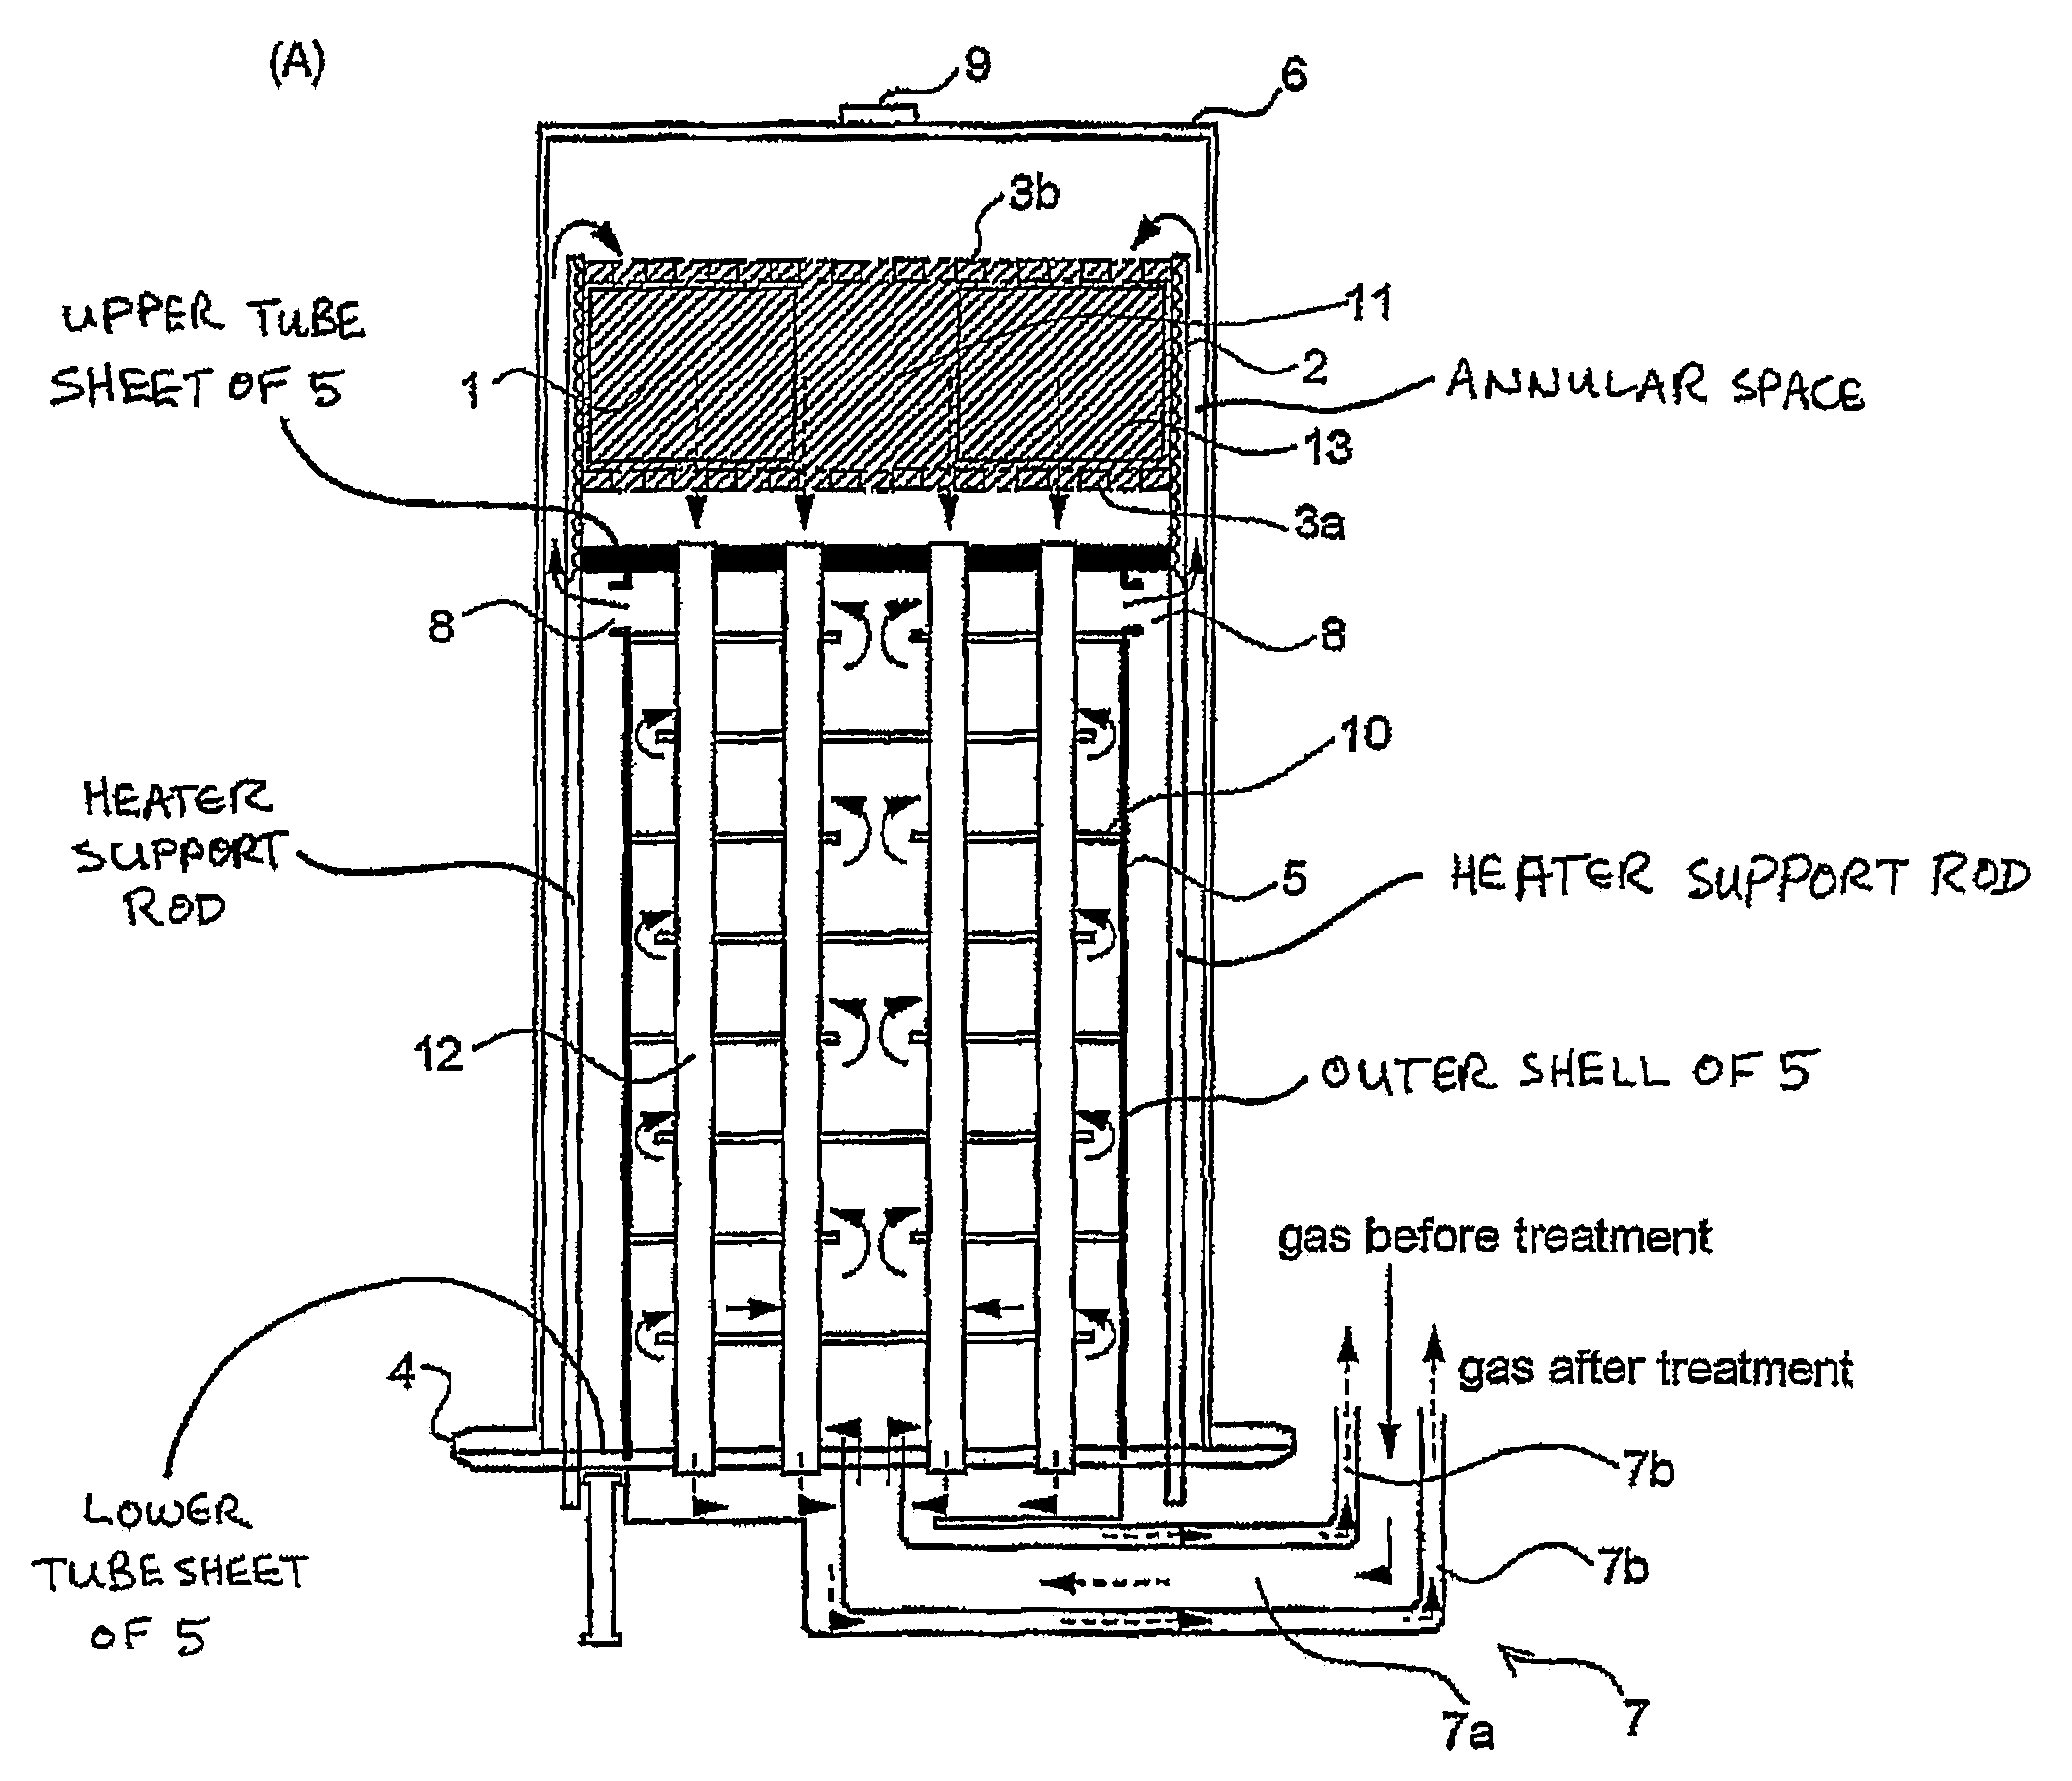 Fuel conversion reactor